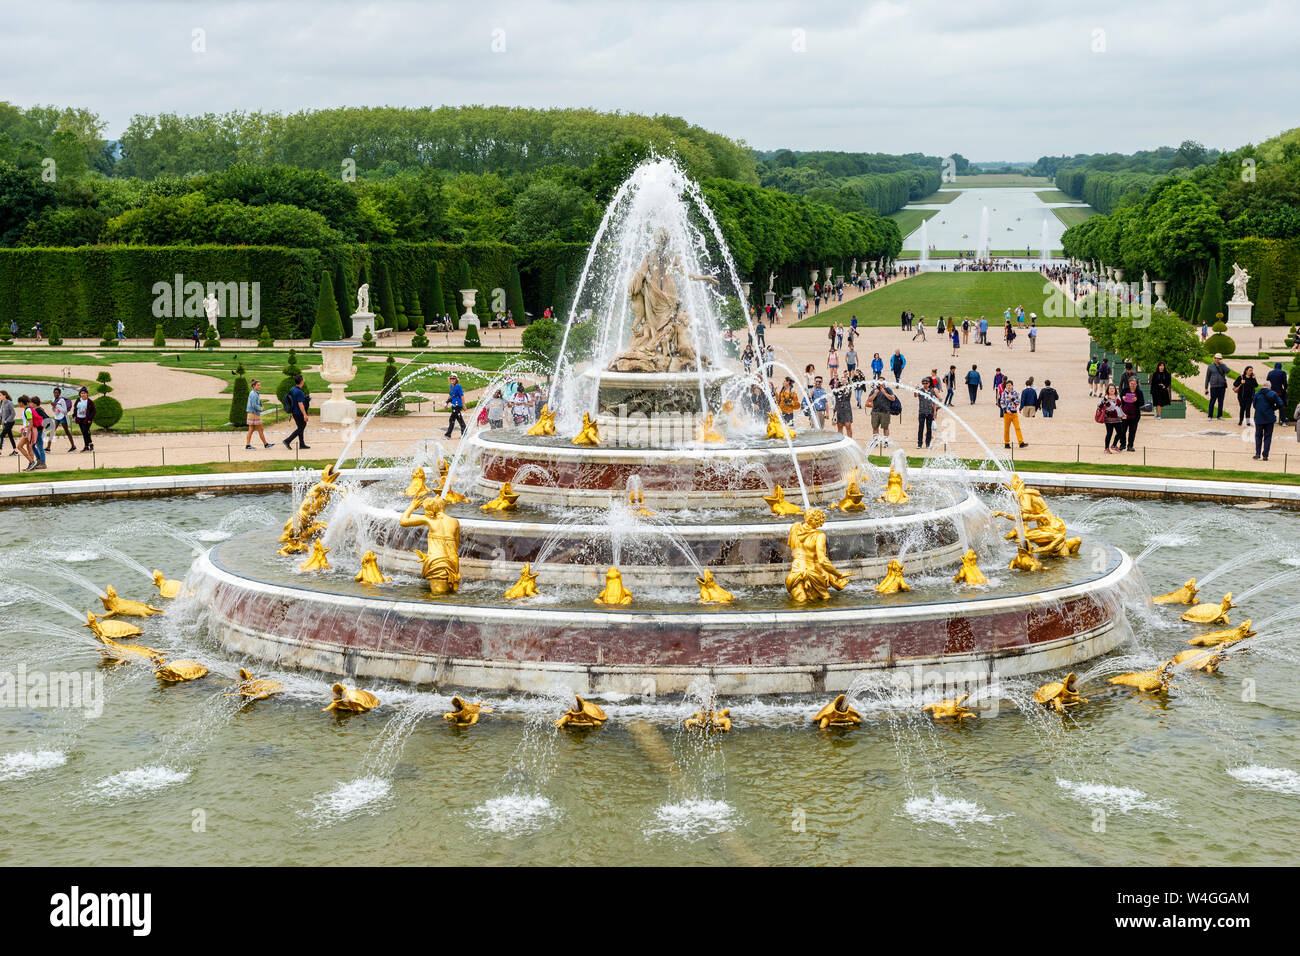 Latonabrunnen, die latona Ihre Kinder schützen - Palast von Versailles Gärten, Yvelines, Region Île-de-France Frankreich Stockfoto